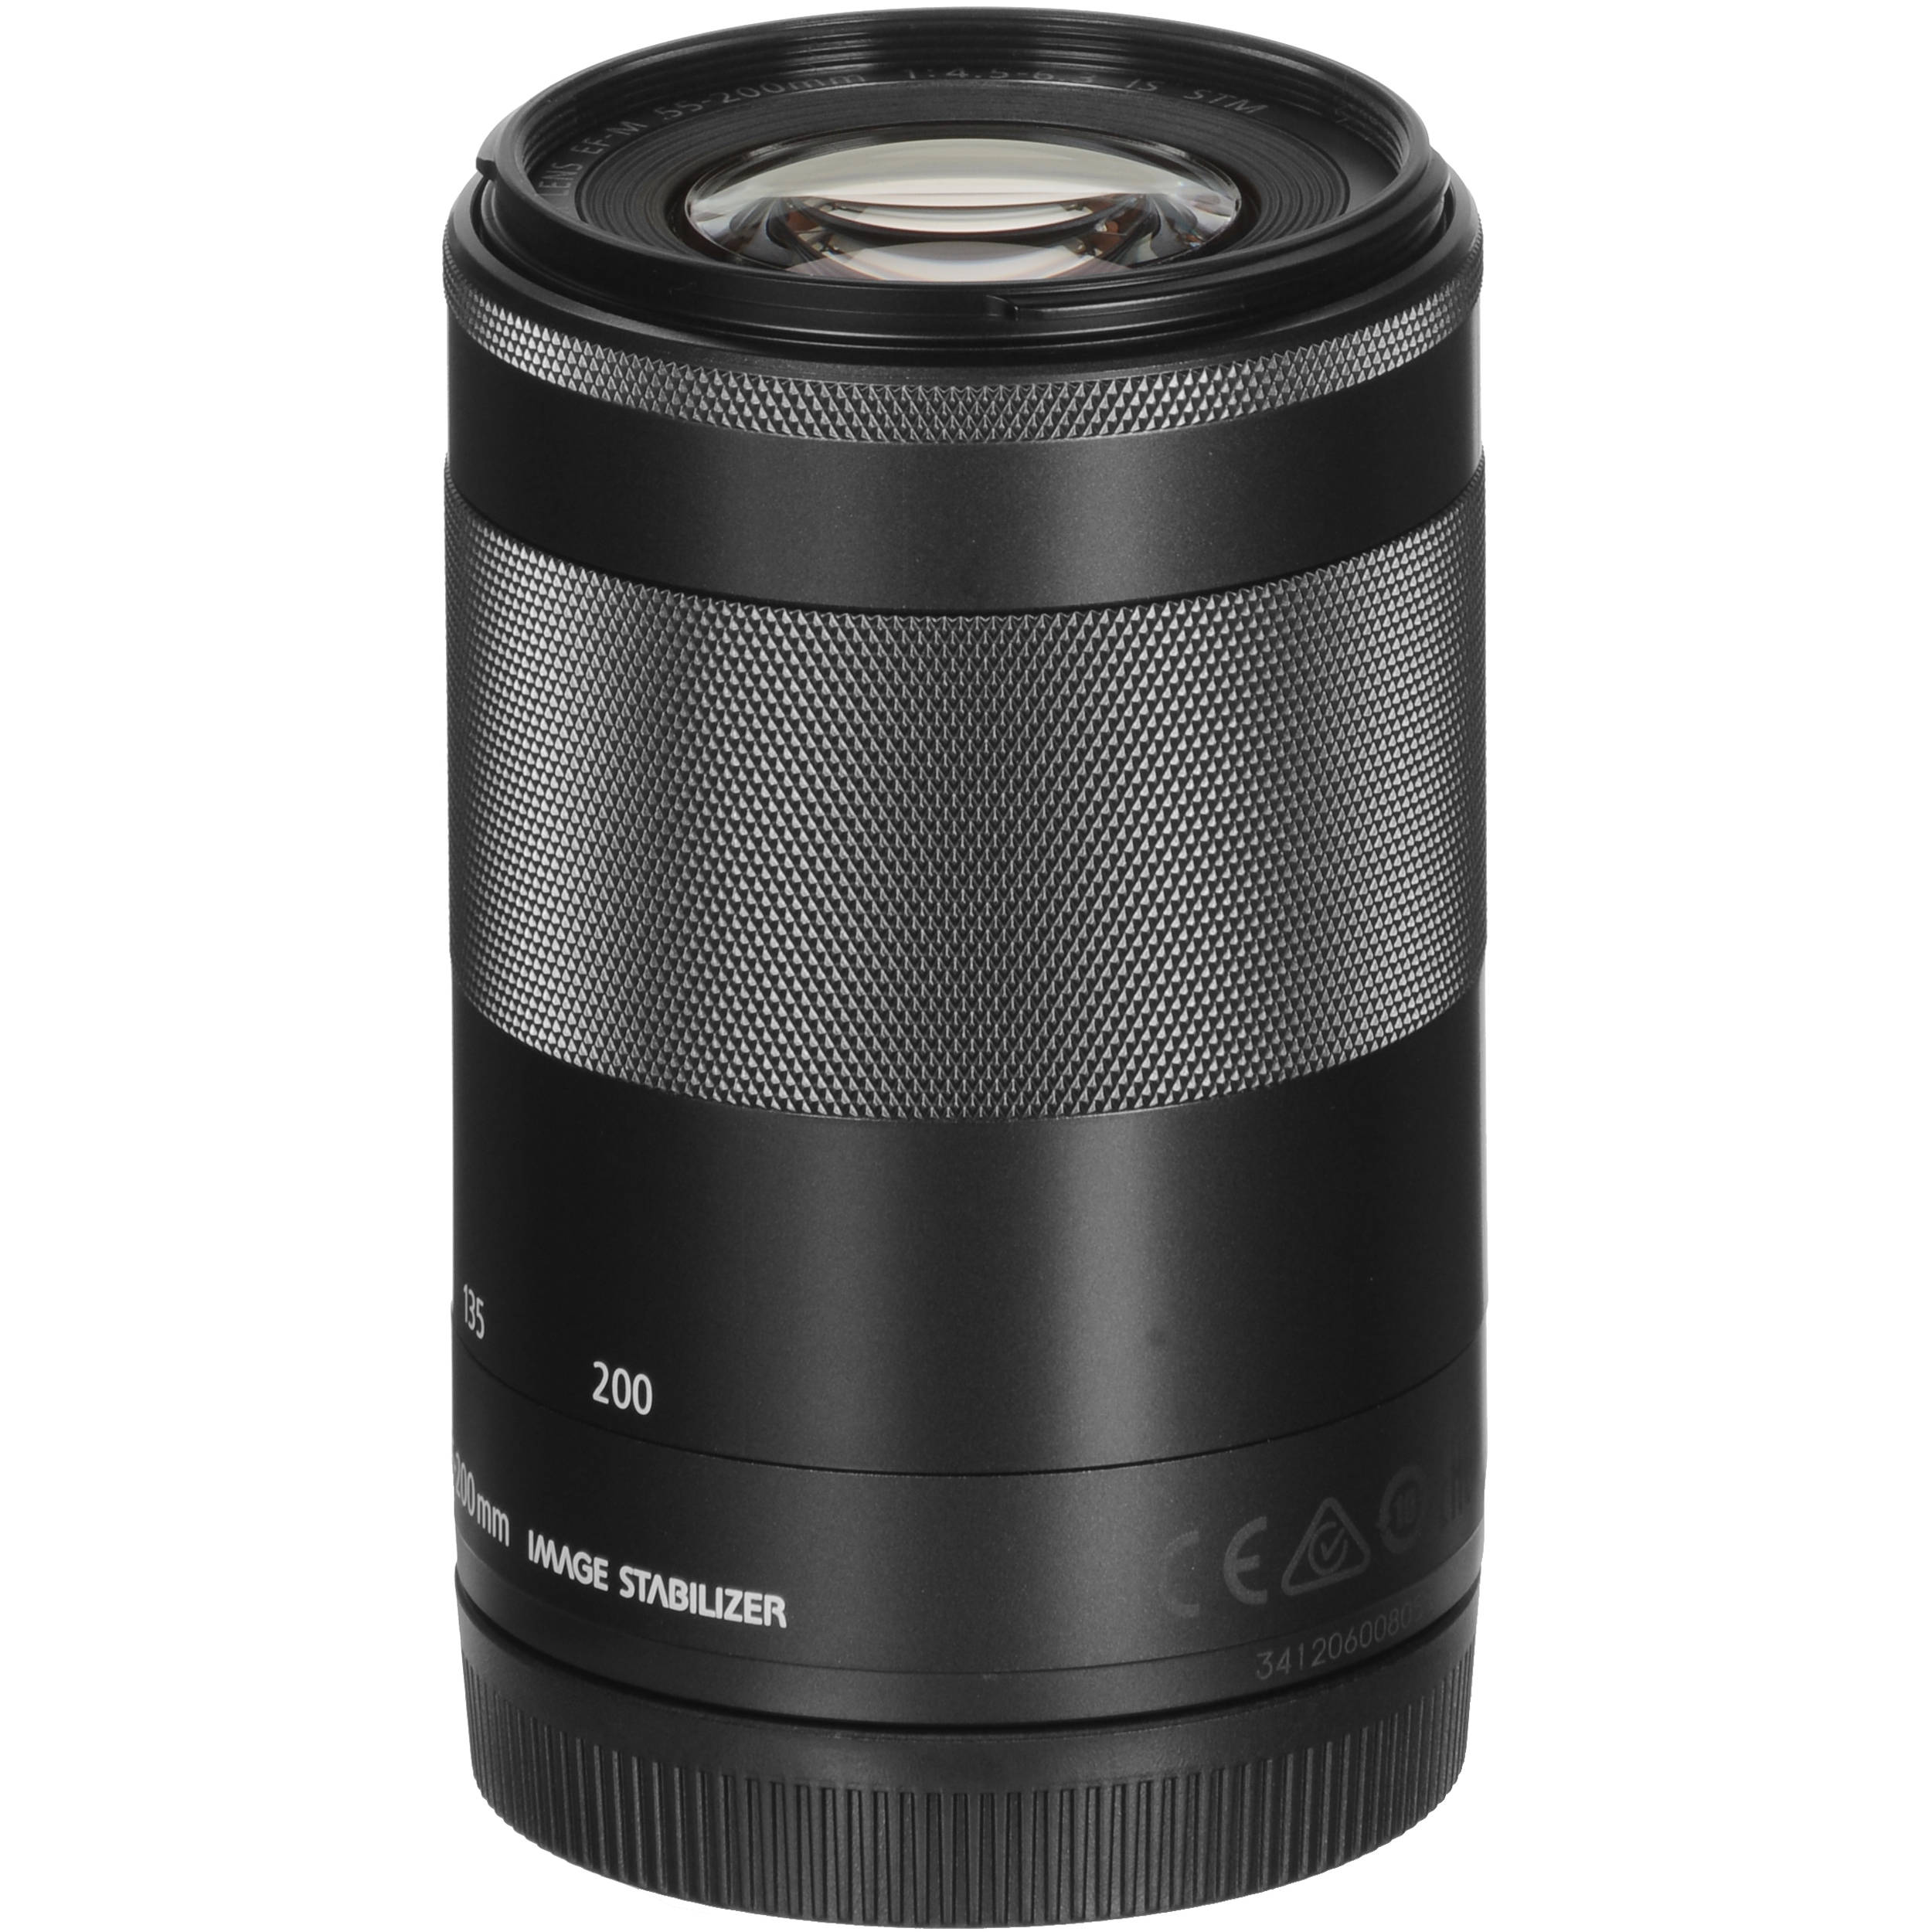 Canon 望遠ズームレンズ EF-M55-200mm F4.5-6.3 IS STM(シルバー